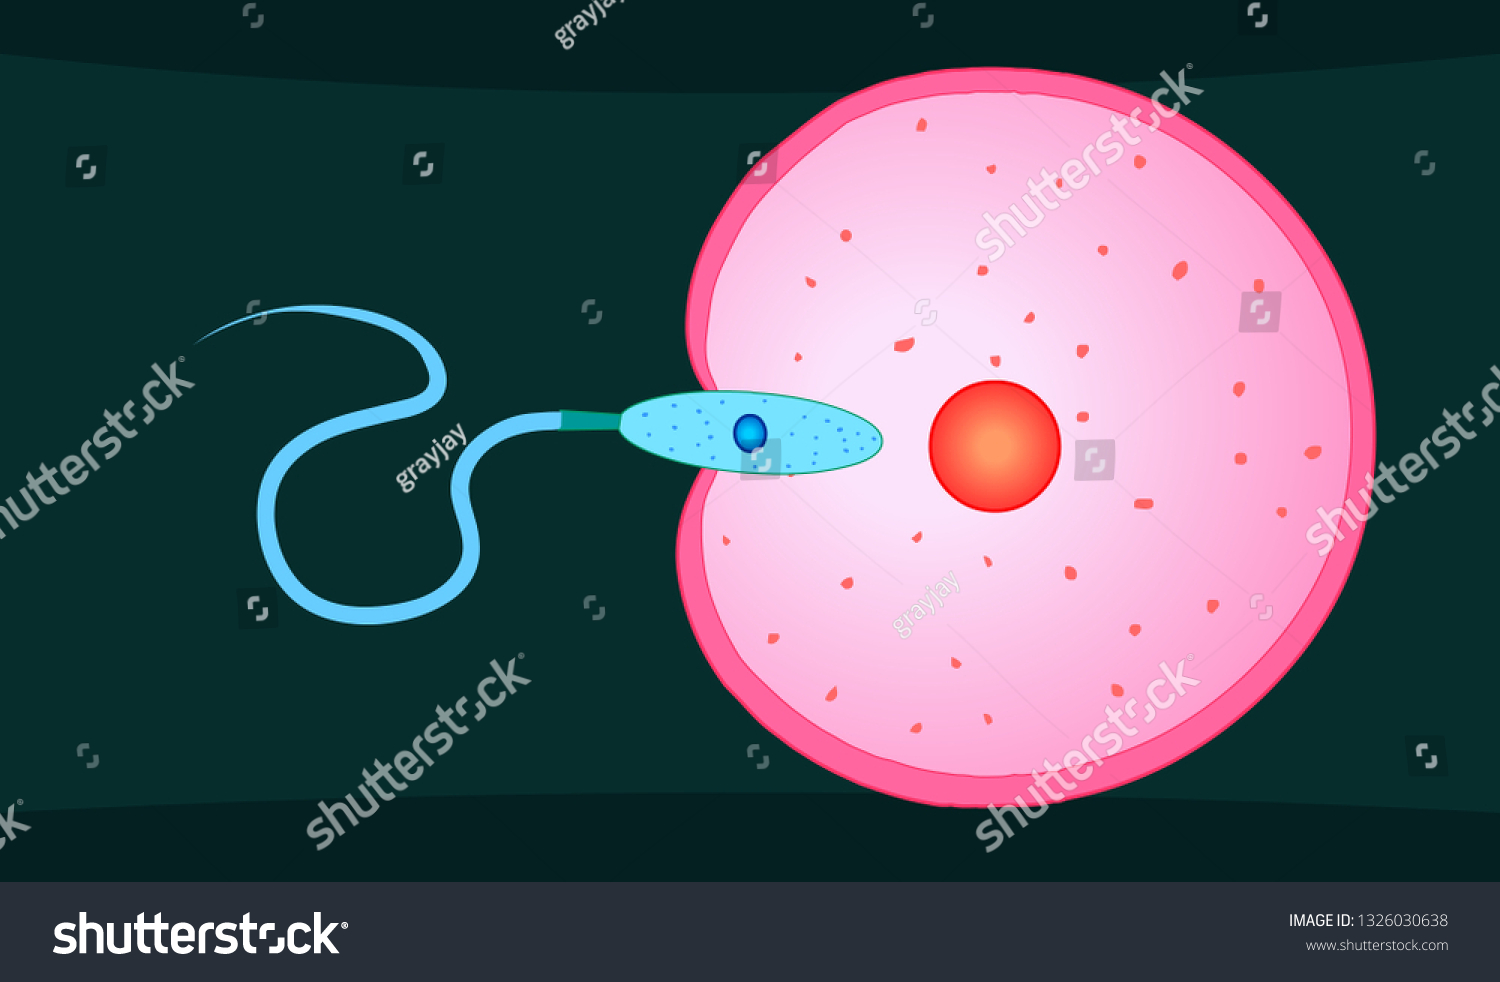 как попадает сперма в матку женщины фото 45